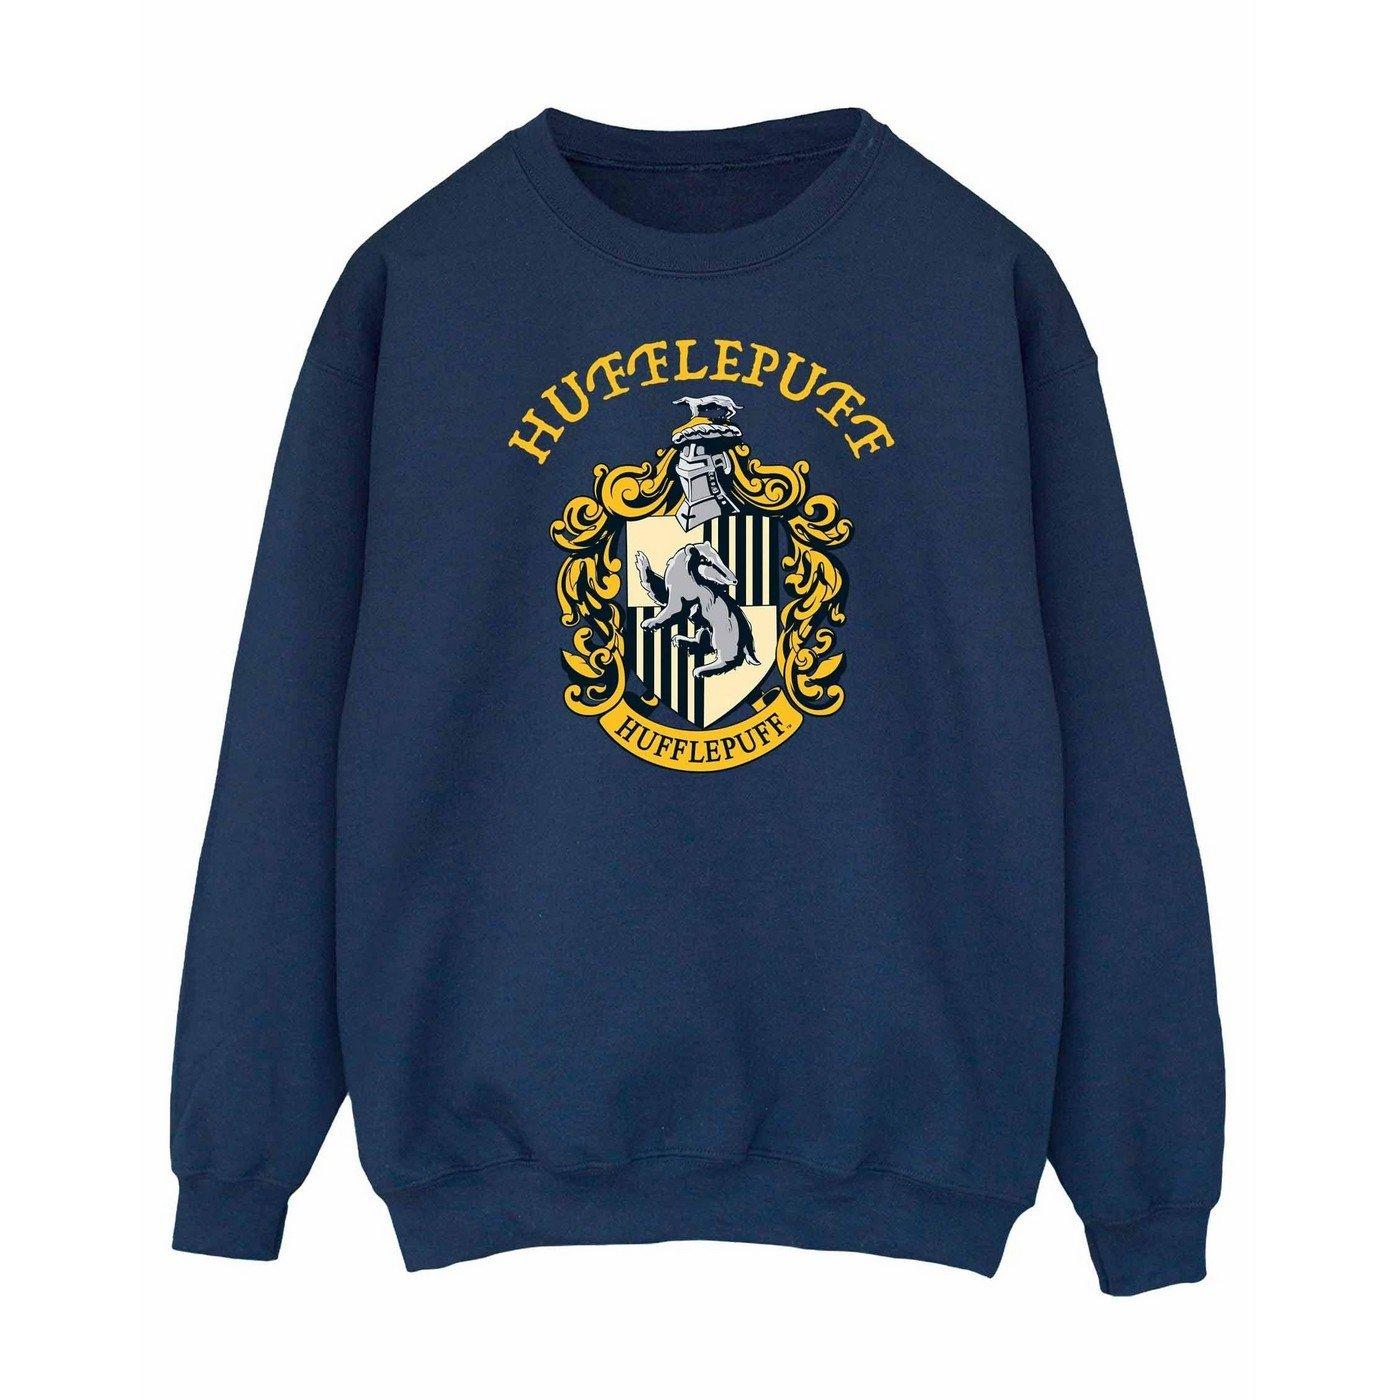 Sweatshirt Herren Marine L von Harry Potter